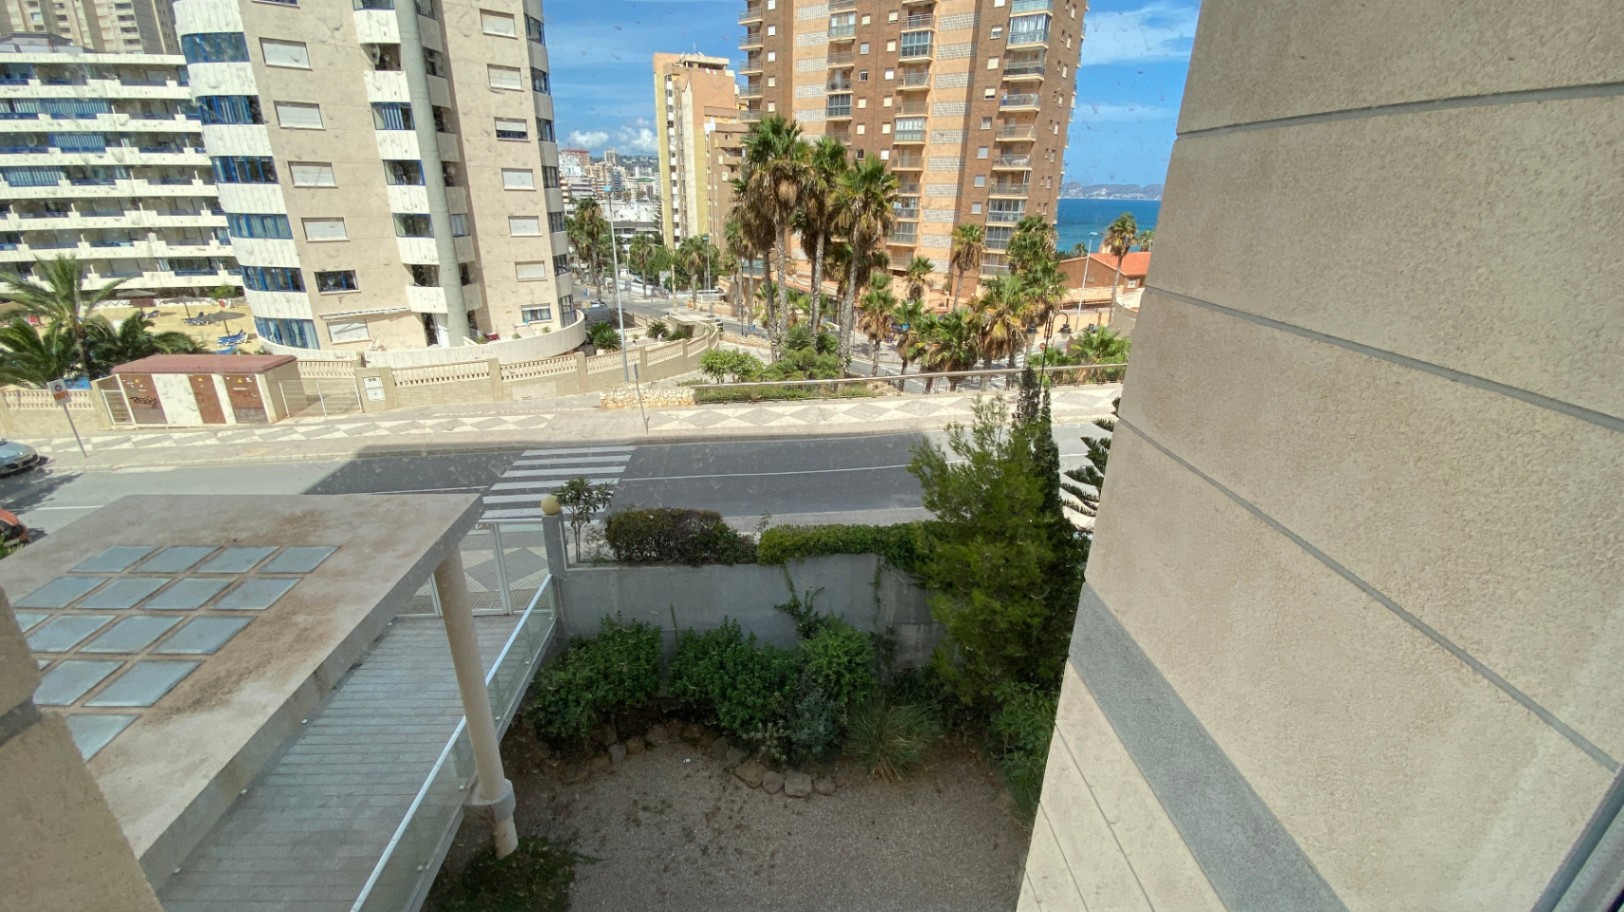 Продается эффектная просторная квартира с панорамным видом на море, порт Кальпе и Пеньон-де-Ифач